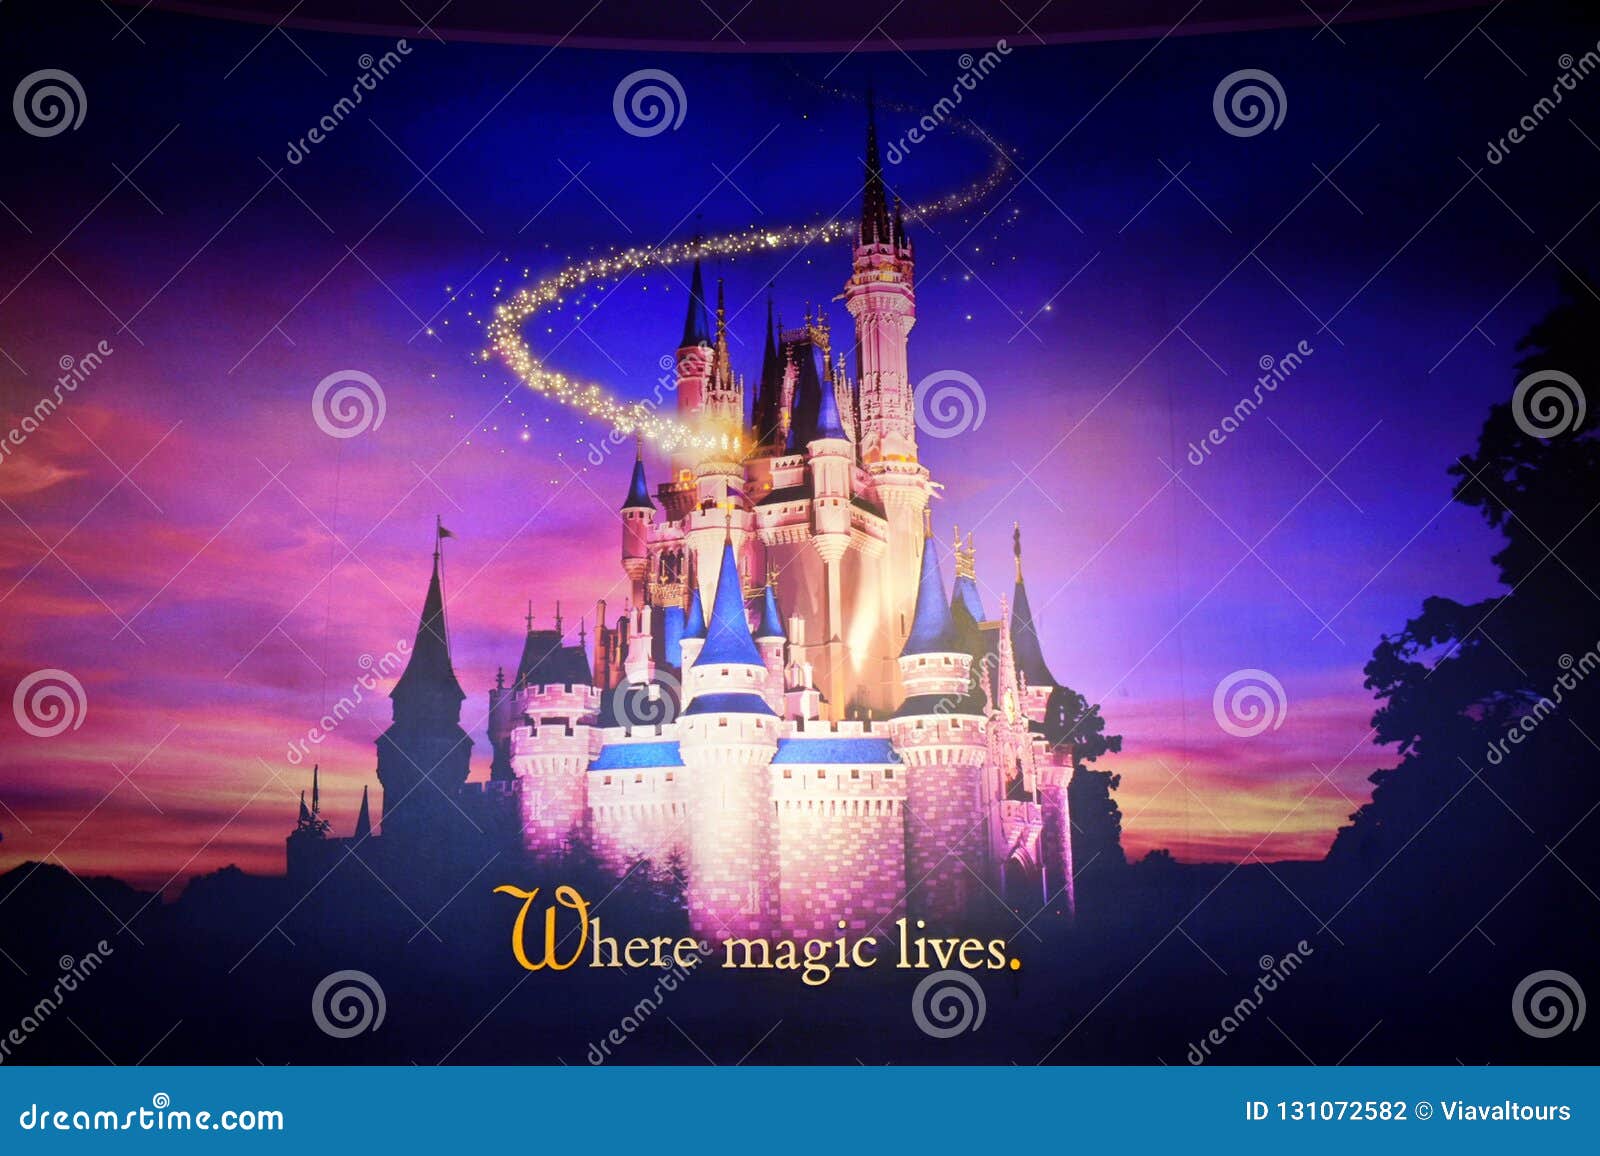 disney world castle at night wallpaper